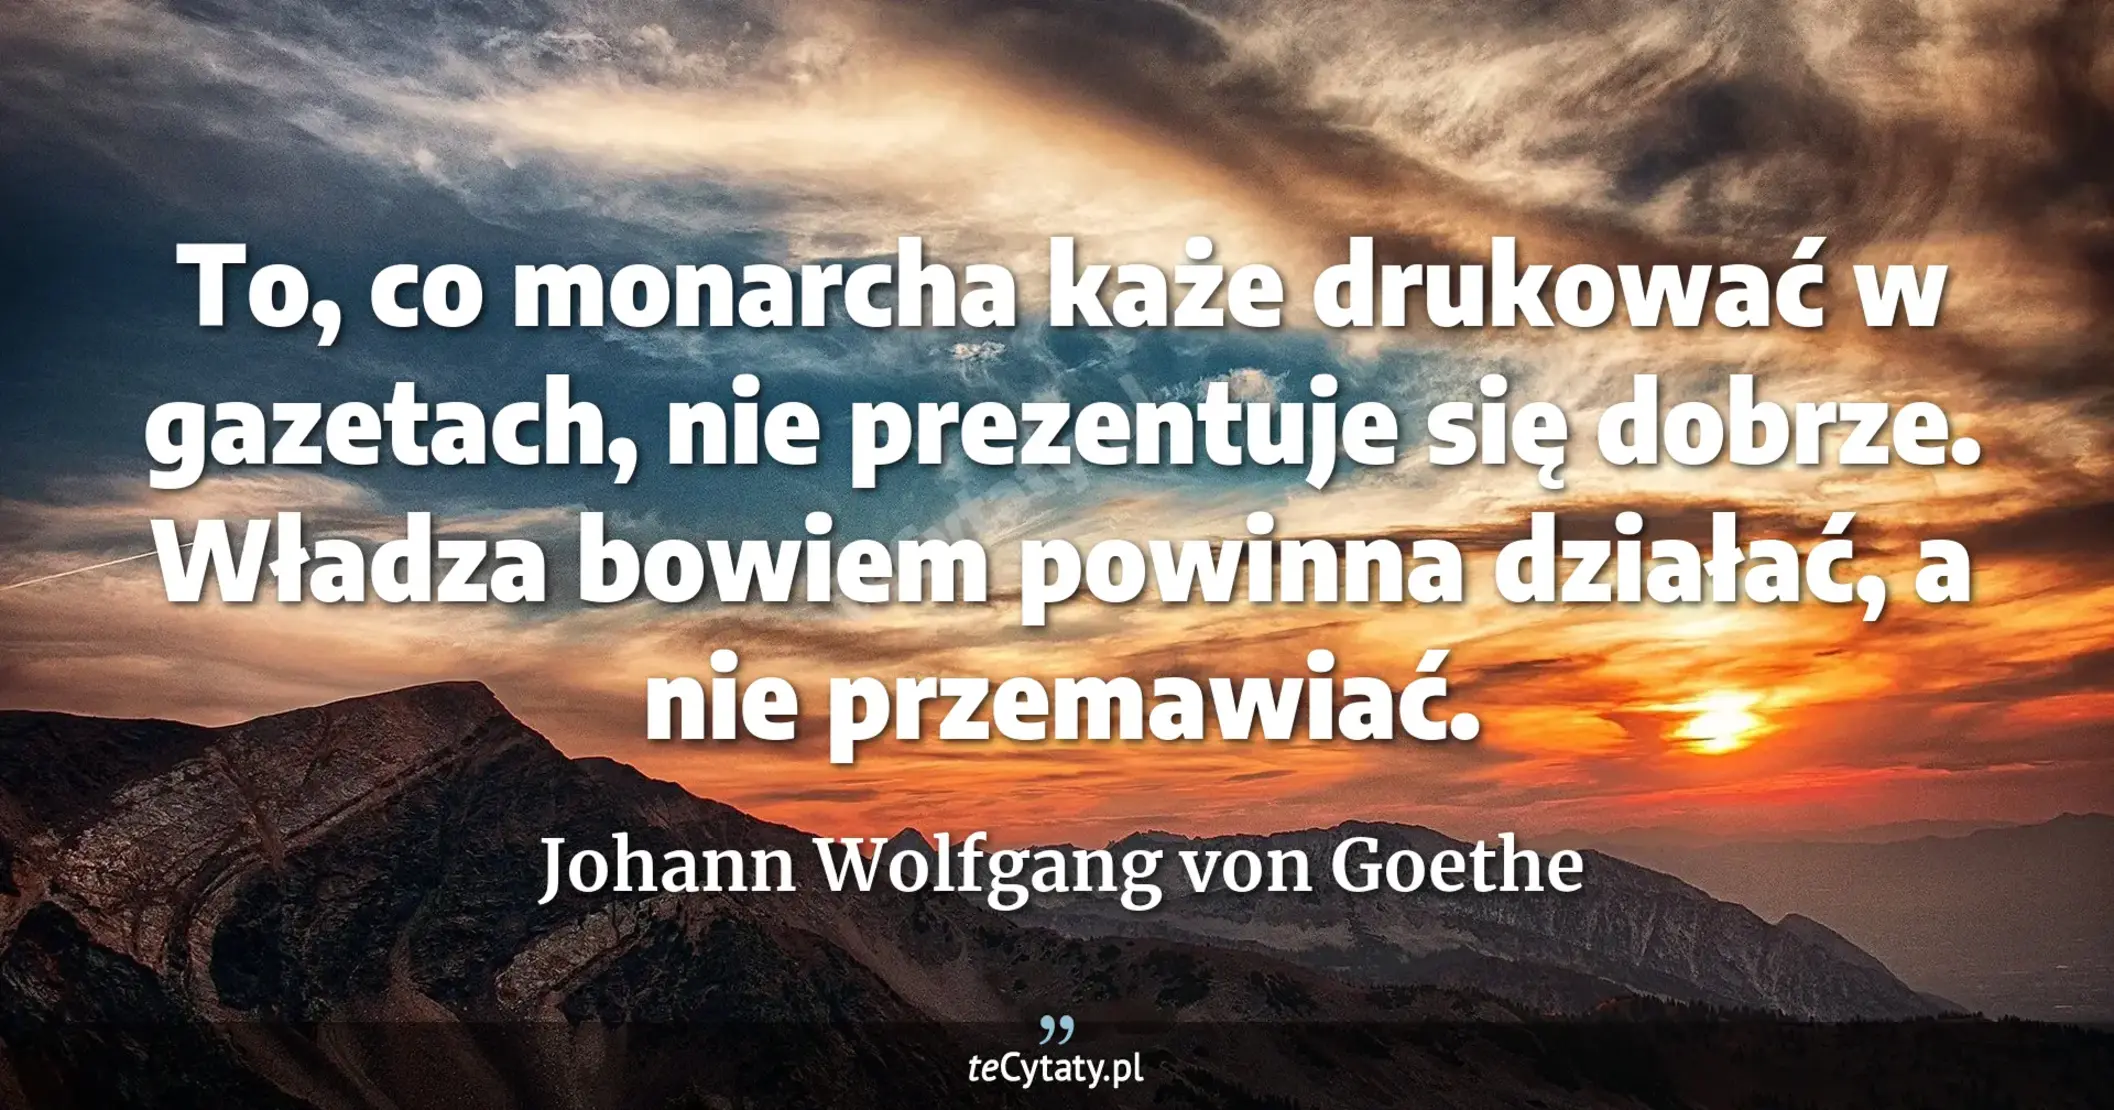 To, co monarcha każe drukować w gazetach, nie prezentuje się dobrze. Władza bowiem powinna działać, a nie przemawiać. - Johann Wolfgang von Goethe